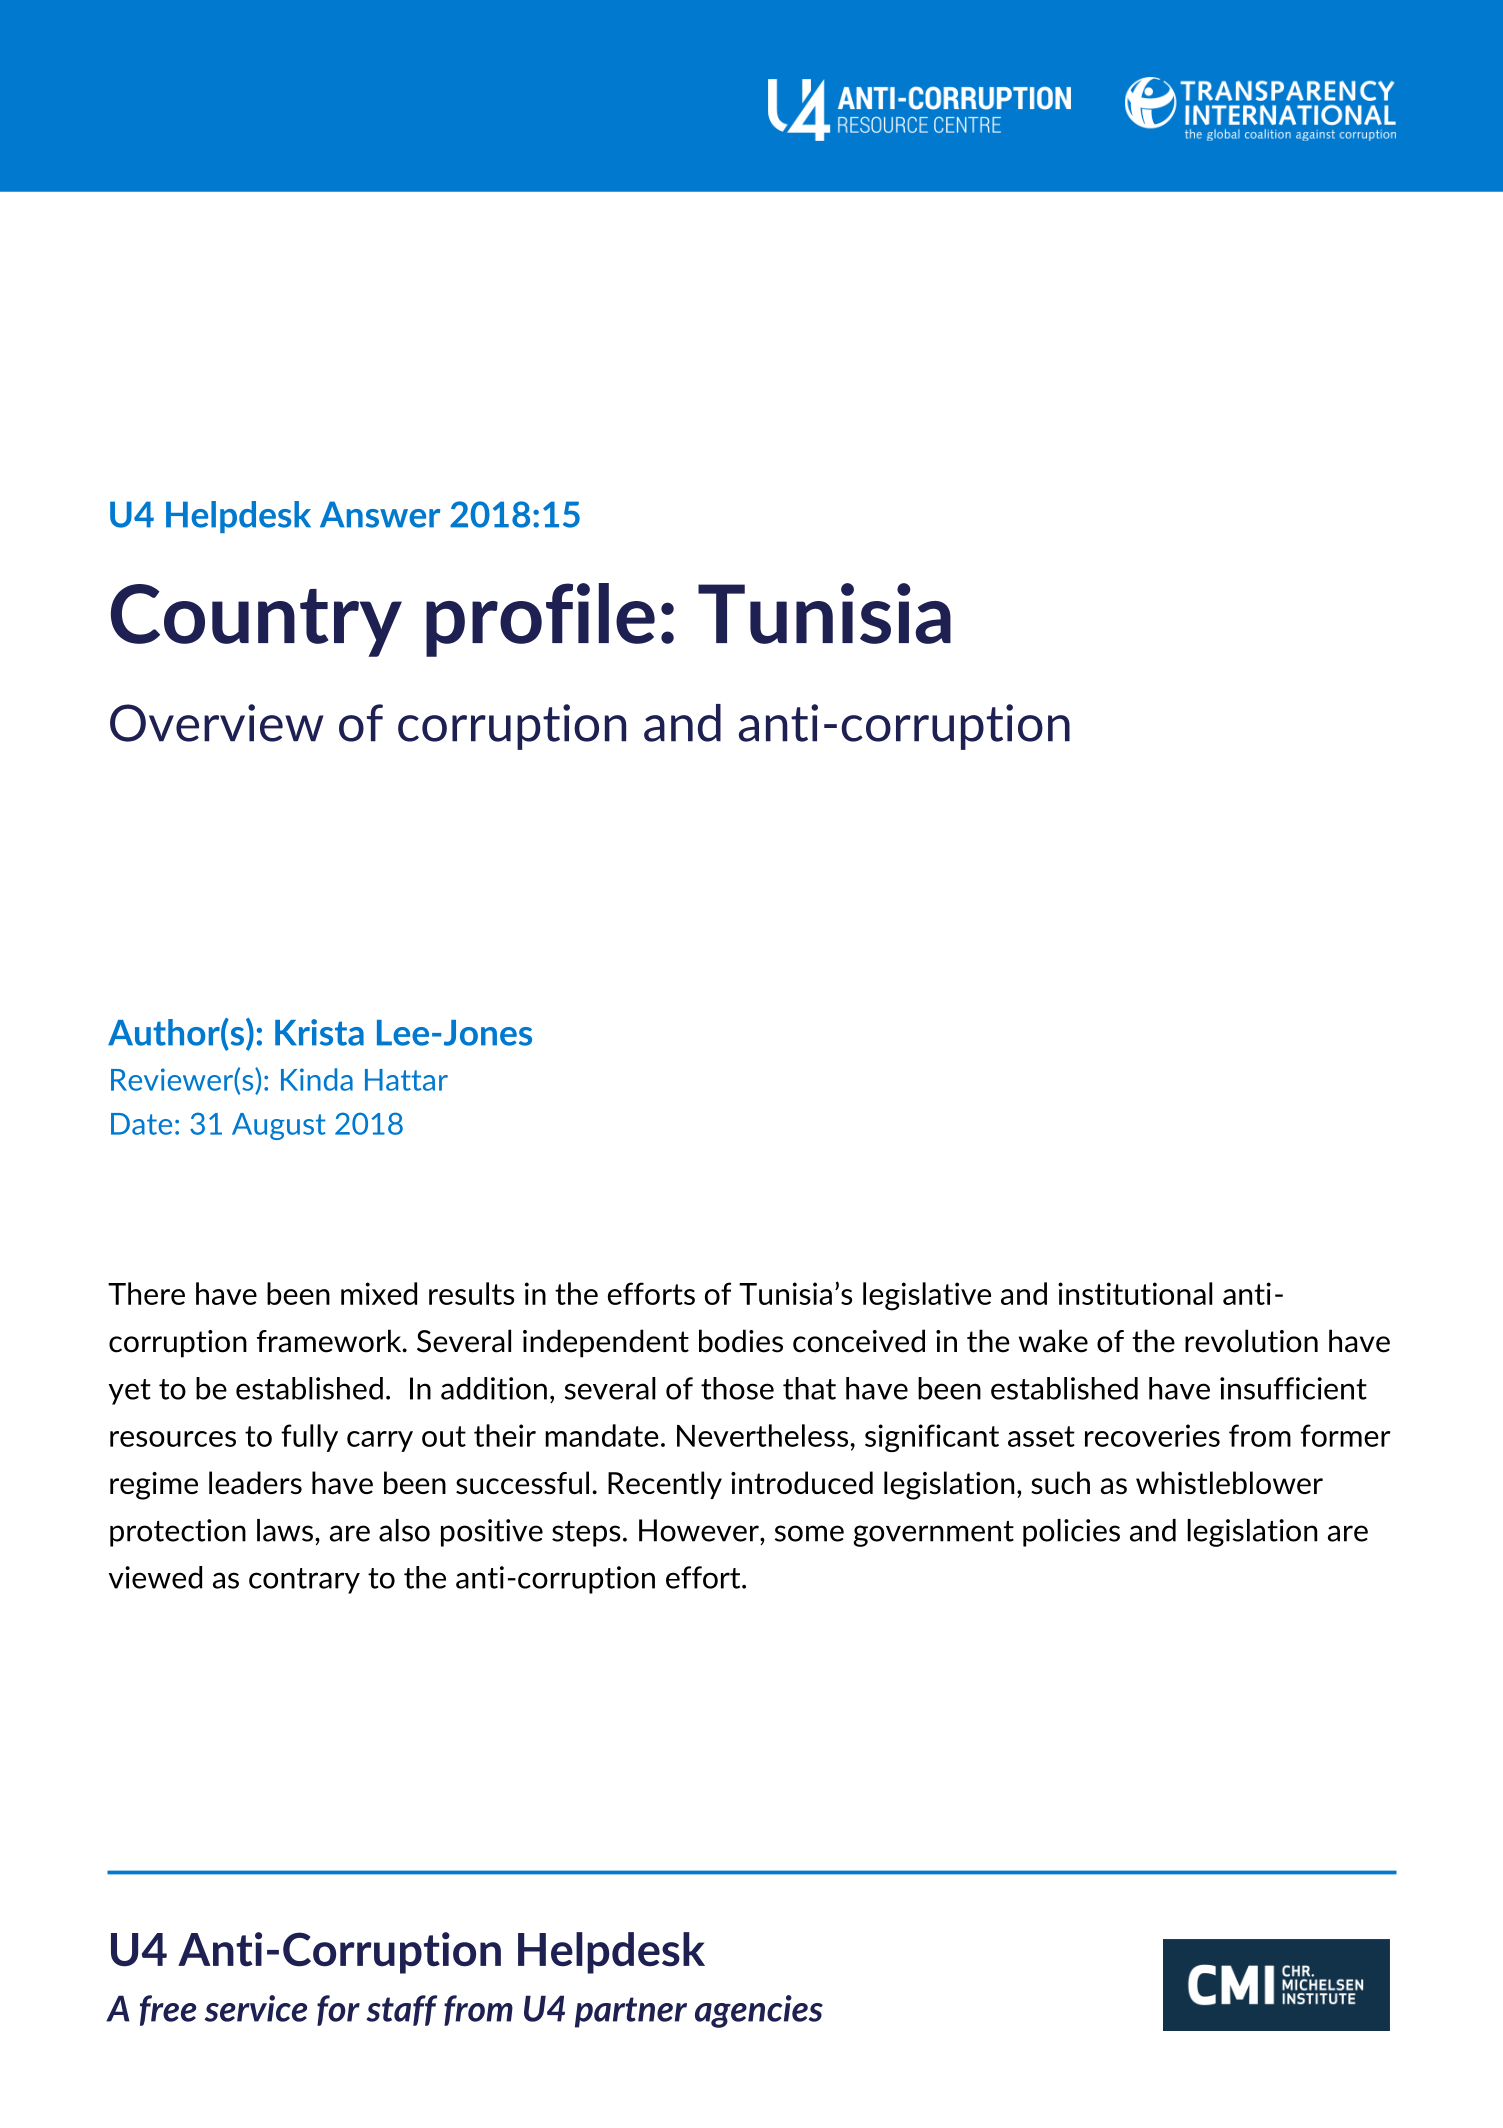 Country profile: Tunisia